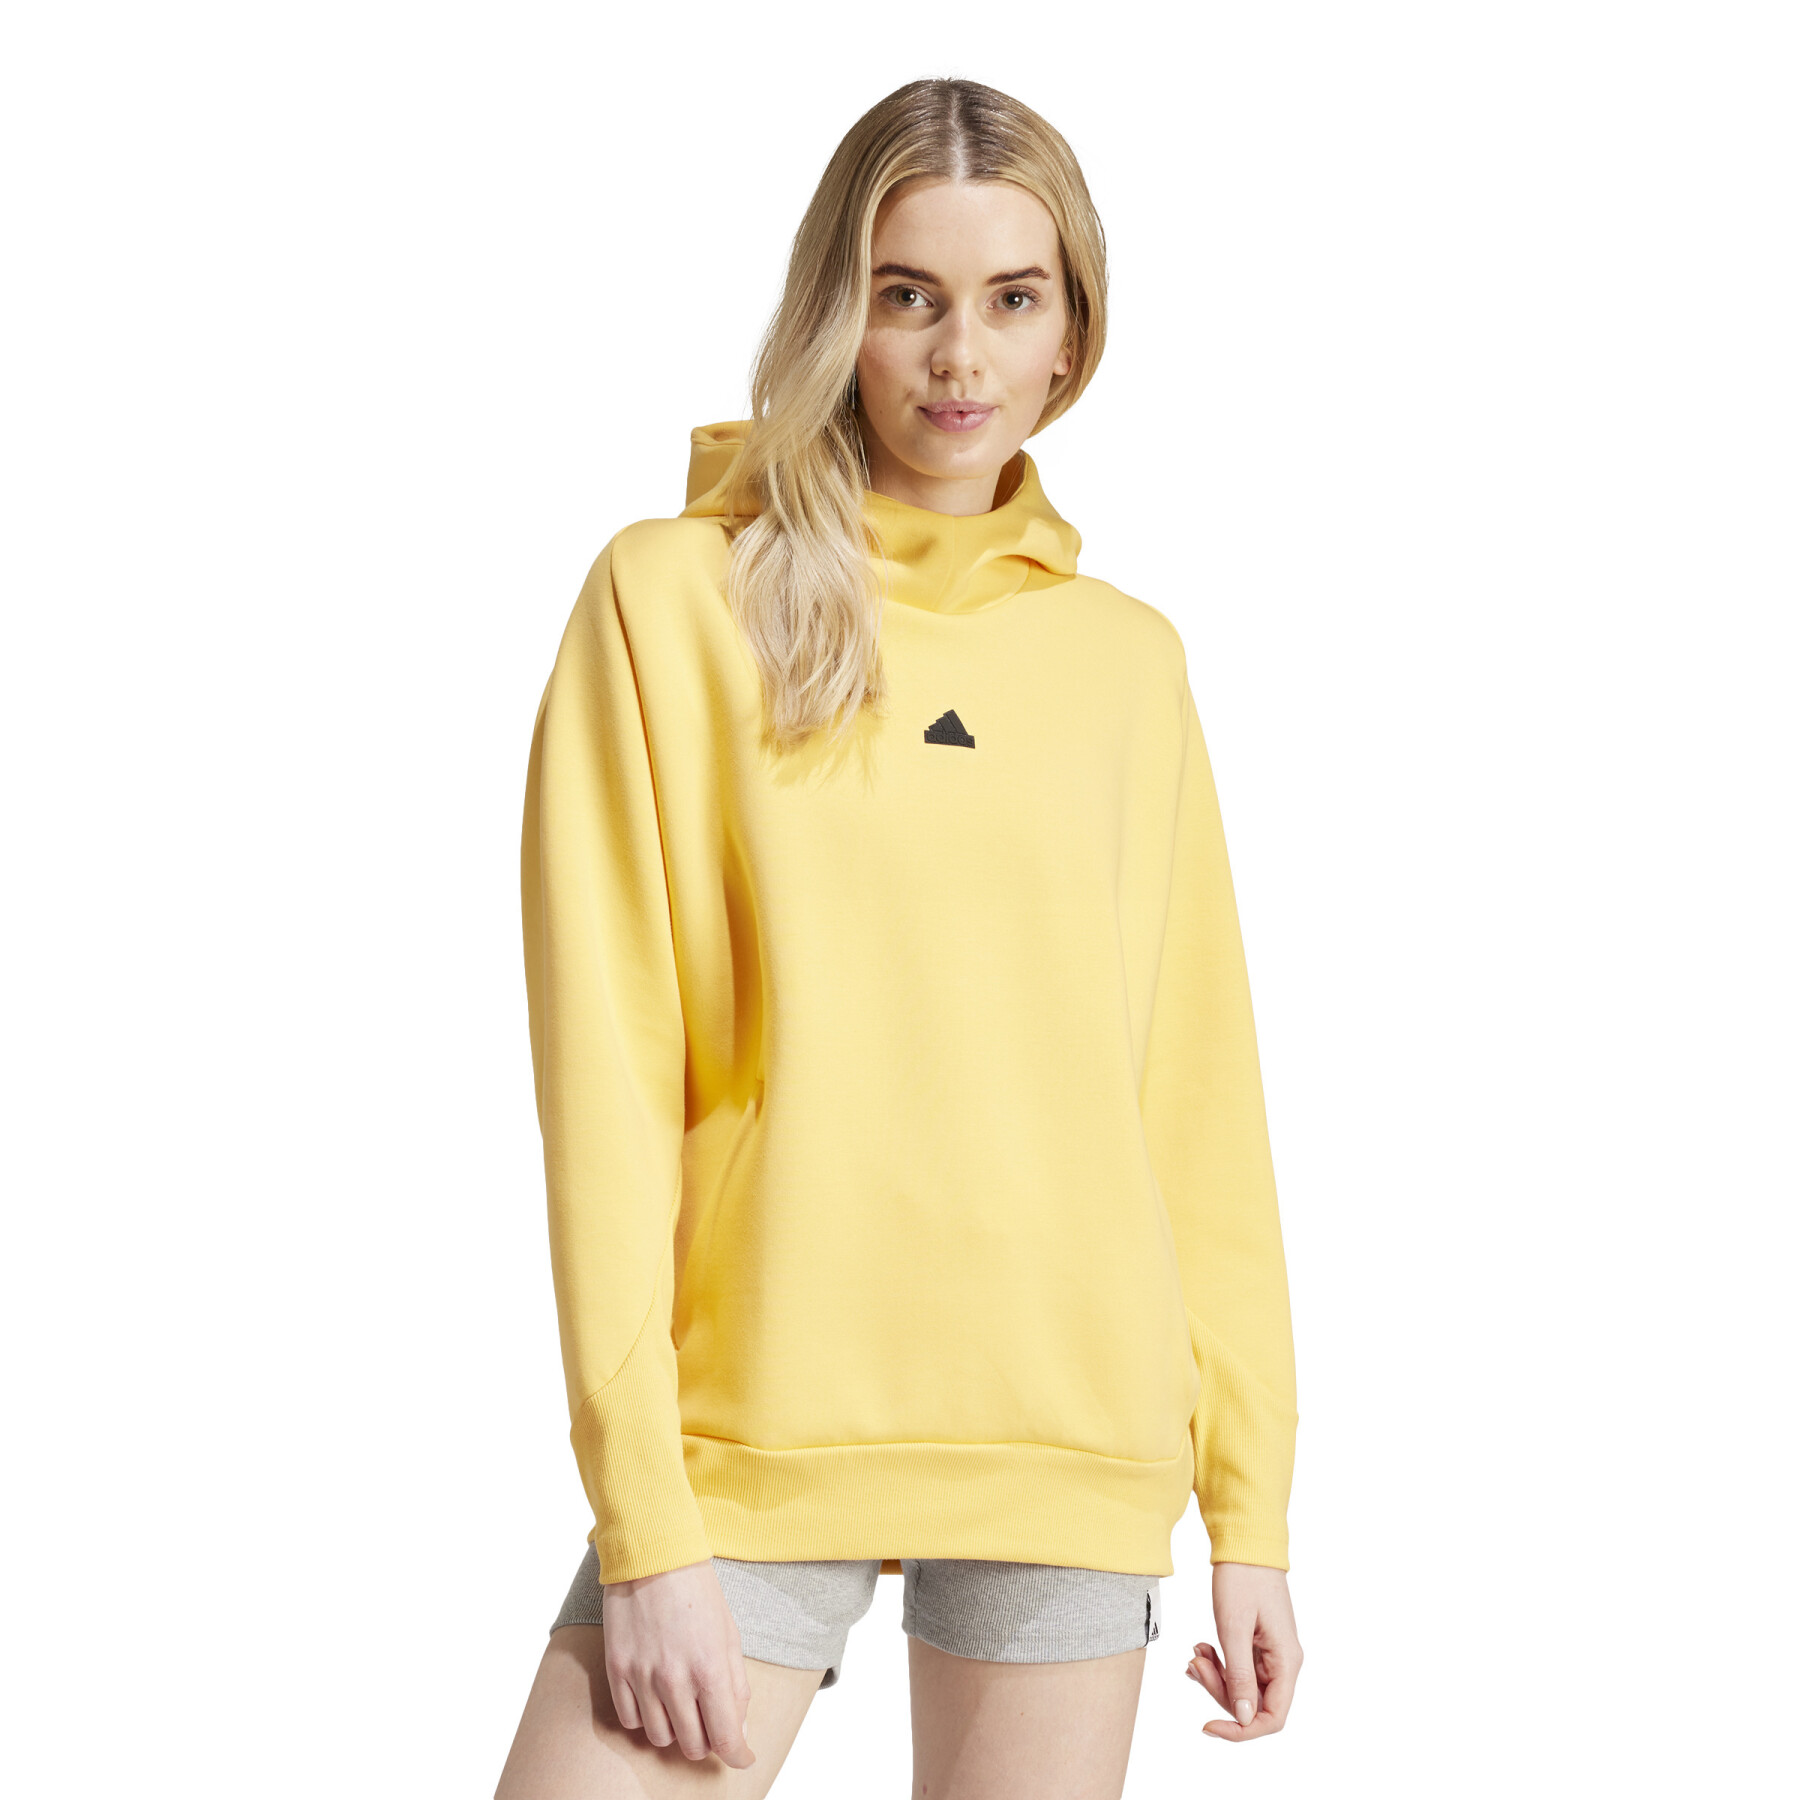 Women's hooded sweatshirt adidas Z.N.E. Overhead